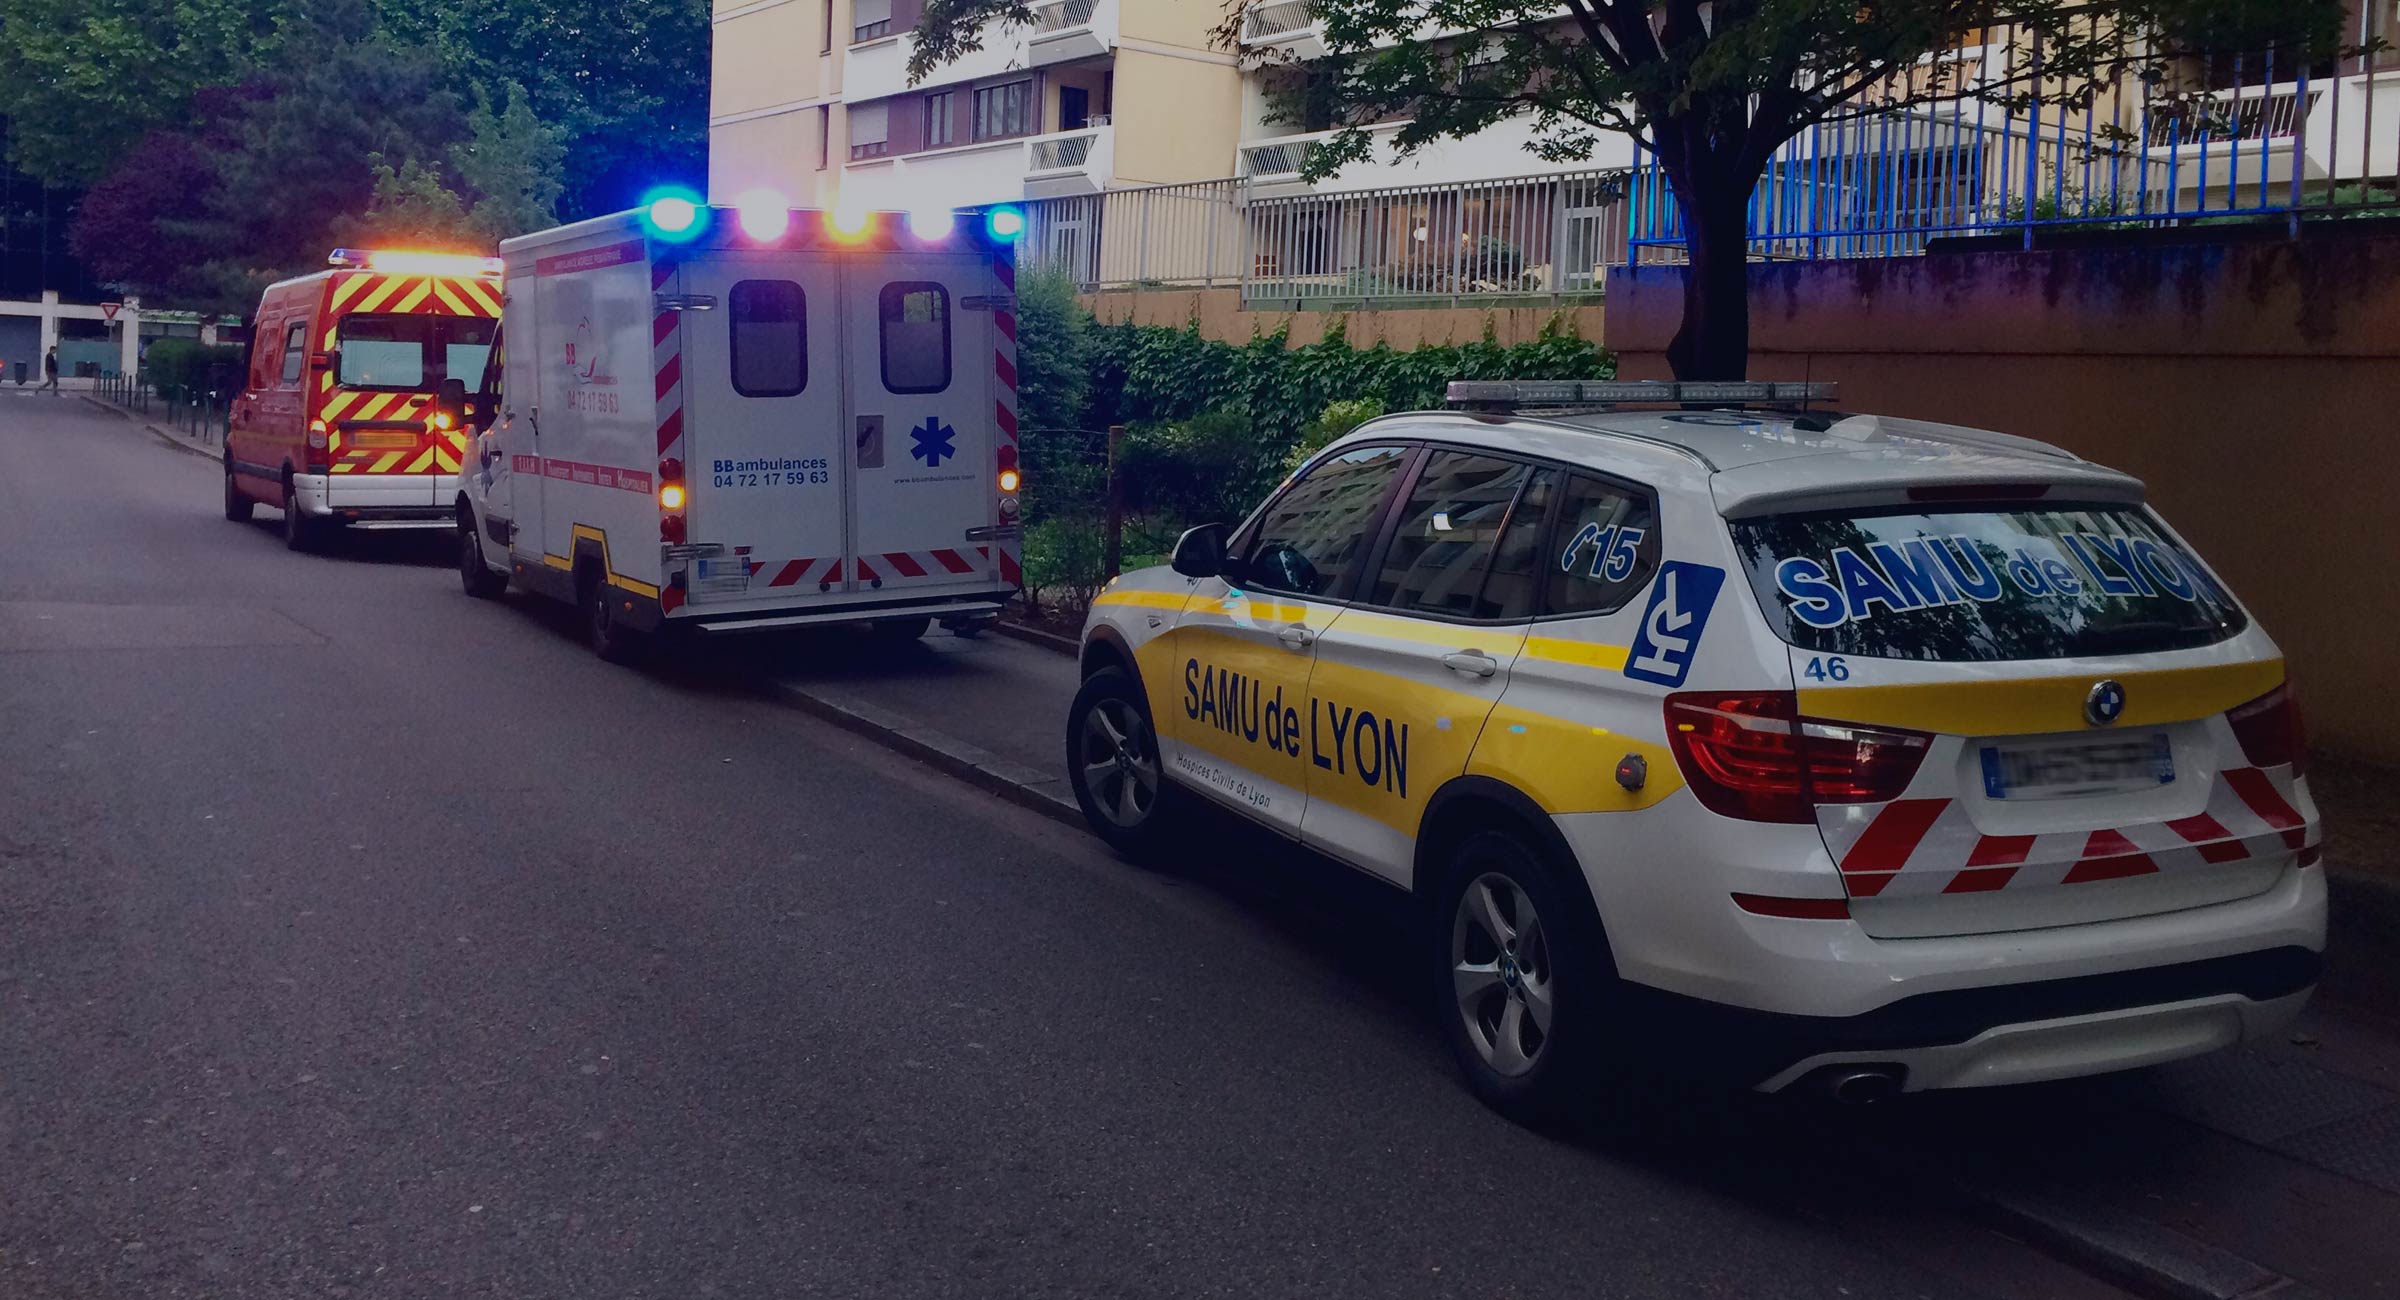 Ambulance : transfert paramédicalisé inter hospitalier Lyon / Rhône-Alpes.